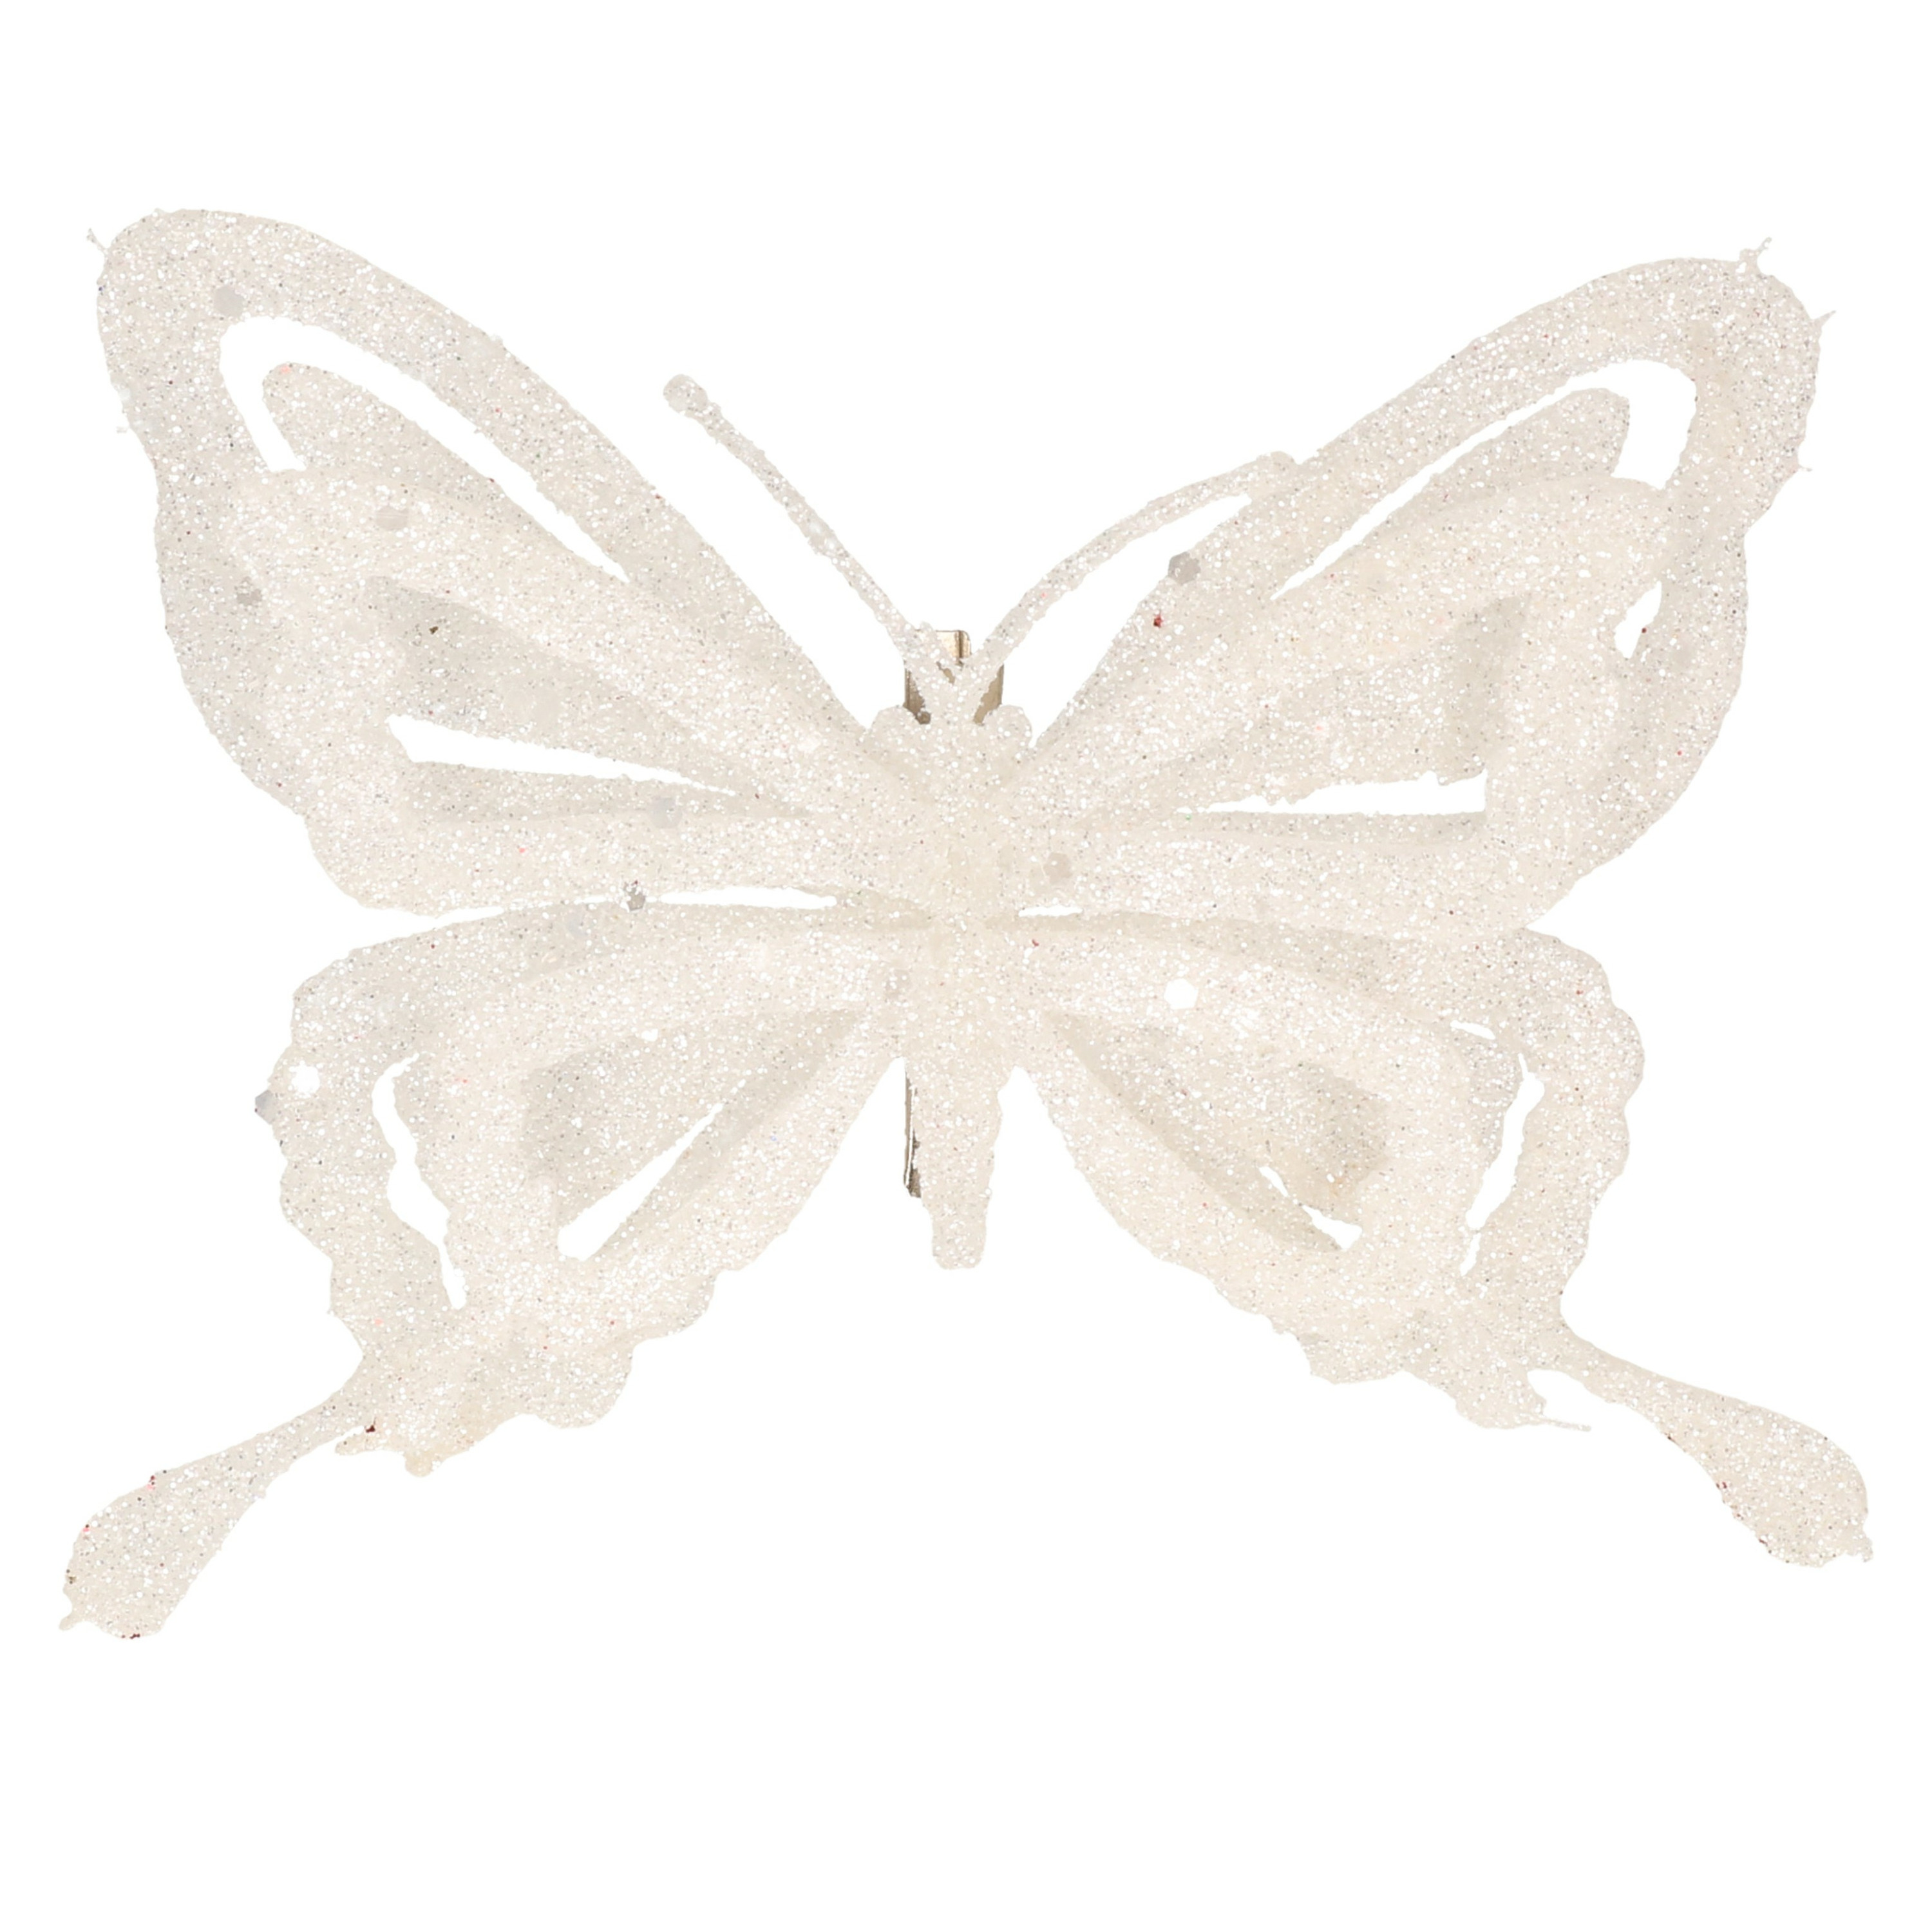 1x stuks decoratie vlinders op clip glitter wit 14 cm